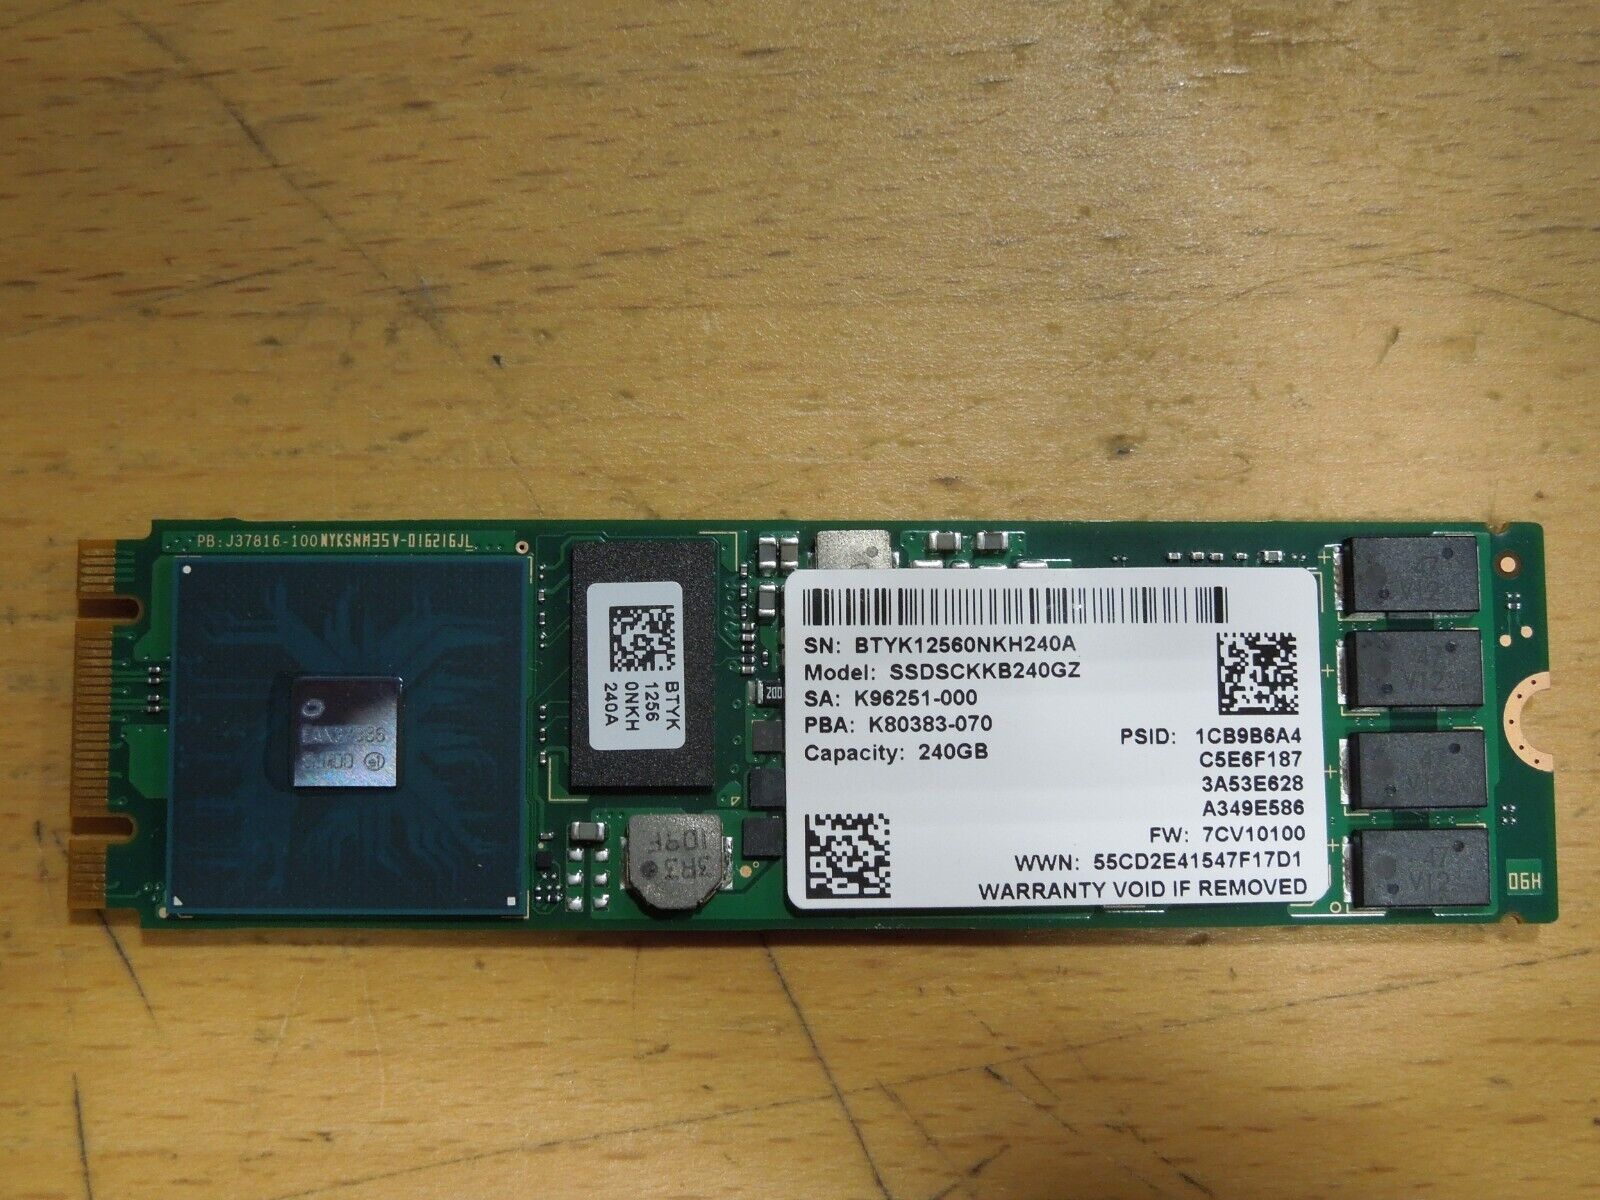 Intel D3-S4520 240 GB Solid State Drive - M.2 2280 Internal - SSDSCKKB240GZ01